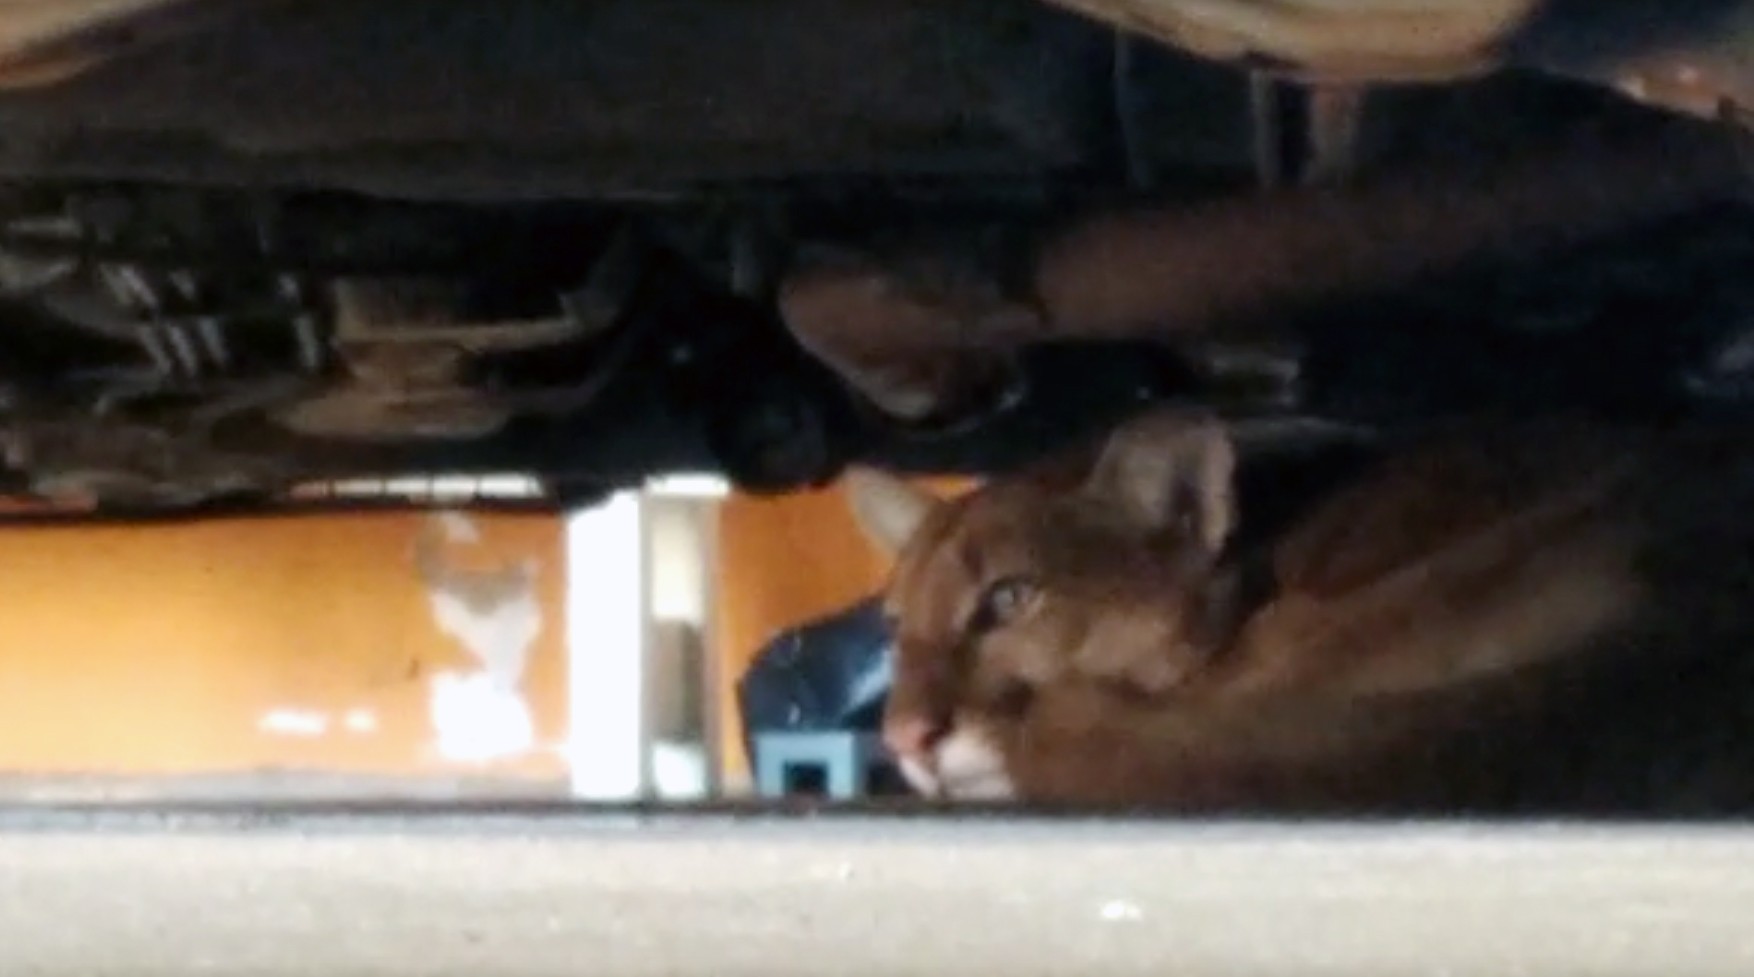 Ameaçada de extinção, onça-parda aparece embaixo de carro em garagem de residência em Presidente Venceslau; veja VÍDEO thumbnail